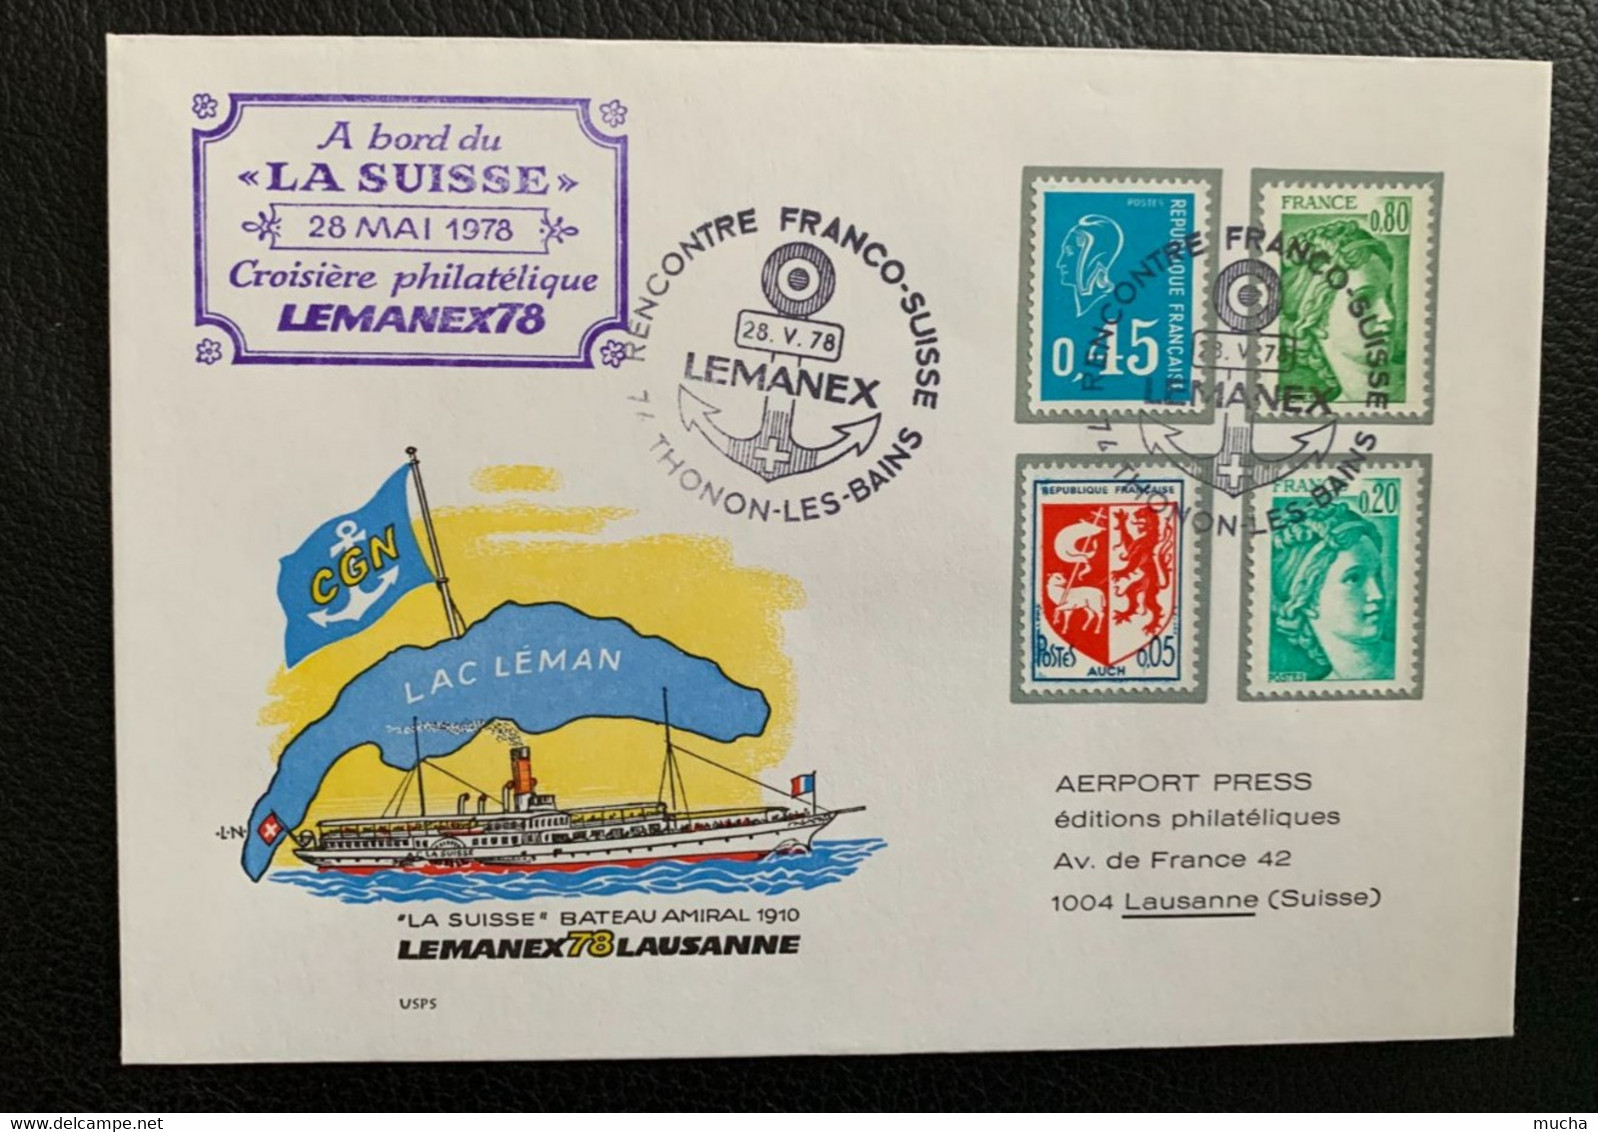 18232 -  Suisse Lemanex 78  Croisière Philatélique à Bord Du "La Suisse"  Rencontre Franco-Suisse Thonon 28.05.1978 - Schiffe